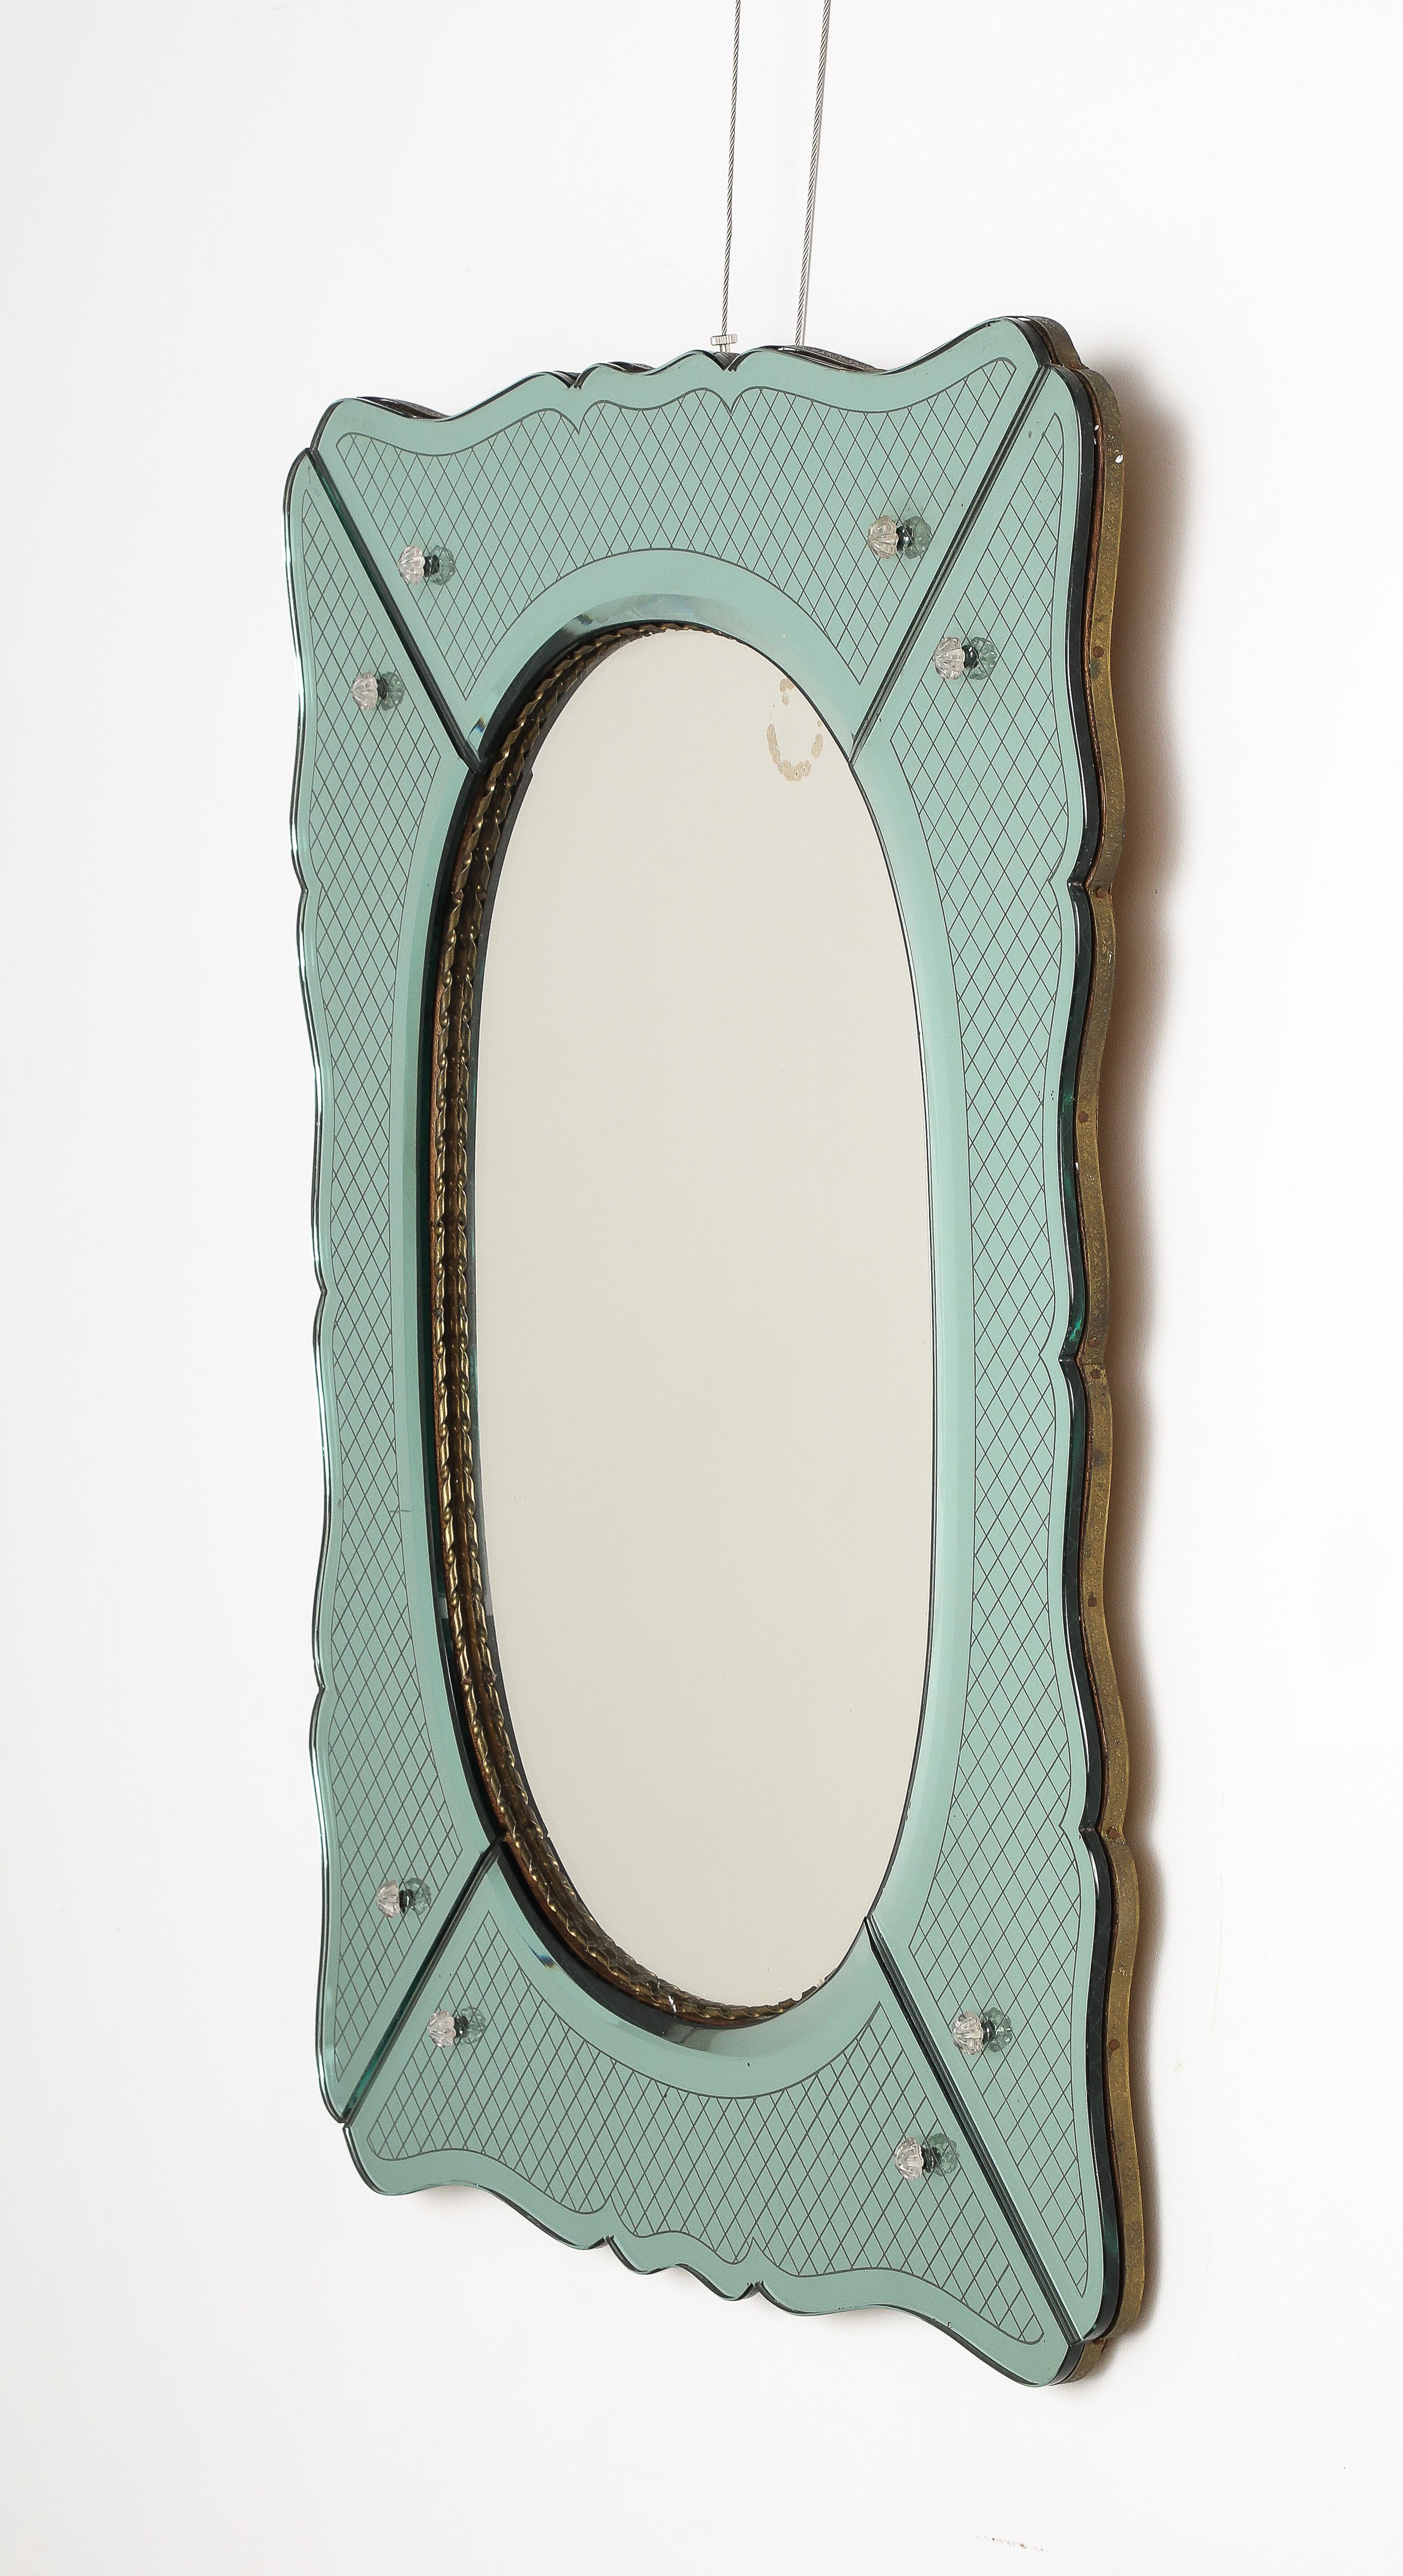 Ein Spiegel aus geätztem Glas von Pietro Chiesa für Fontana Arte in einer atemberaubenden Aquafarbe. Die gewölbte Form ist mit einem geätzten Glasmotiv segmentiert und mit Kristallrosetten verziert.  Die innere ovale Spiegelplatte ist von einer